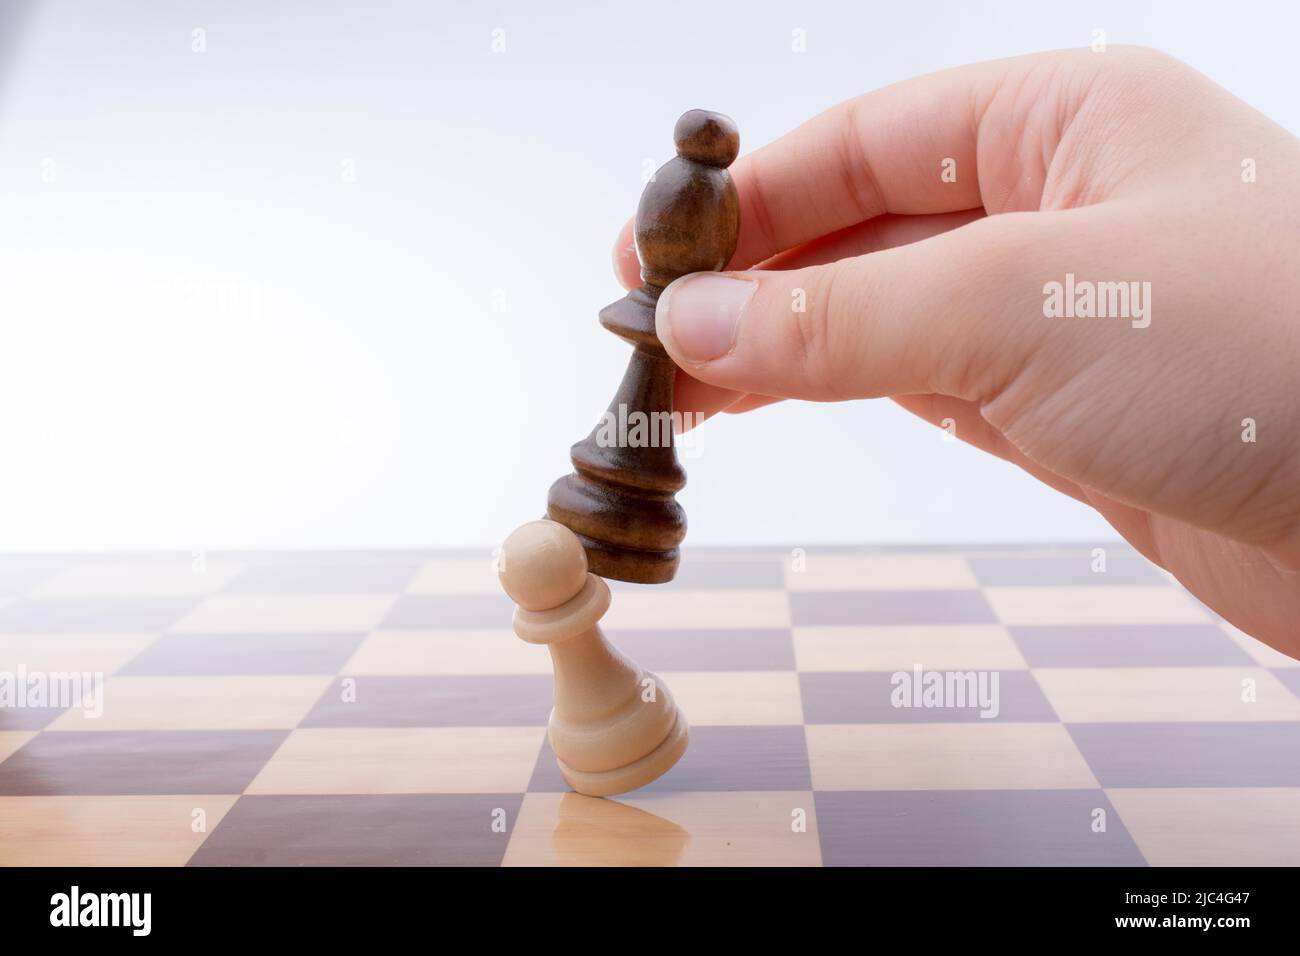 Personne jouant aux échecs faisant un aller à bord Banque D'Images